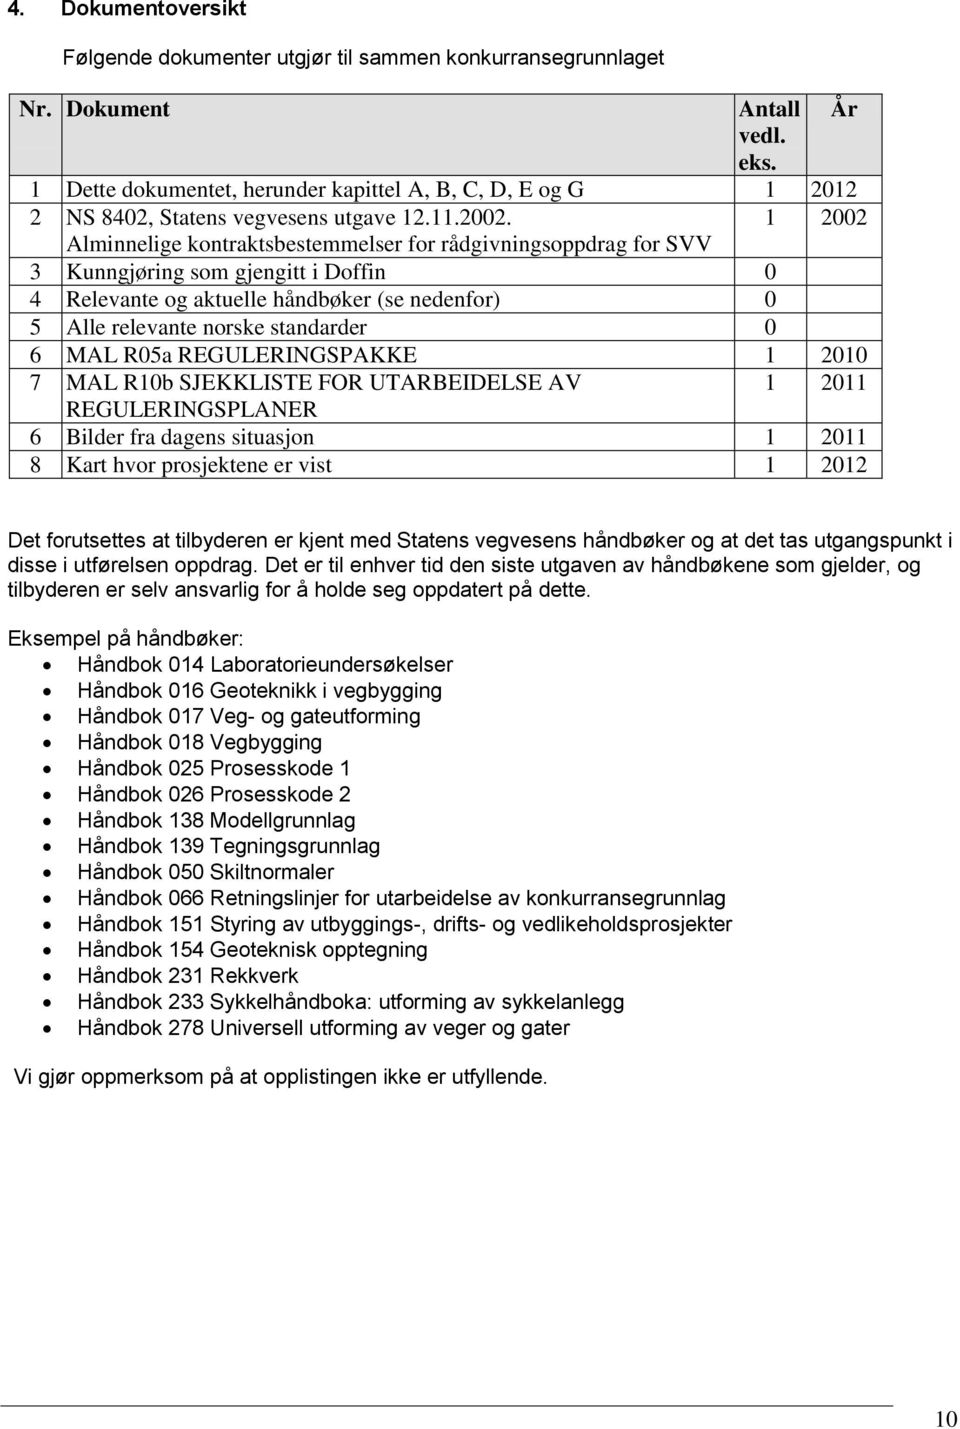 1 2002 Alminnelige kontraktsbestemmelser for rådgivningsoppdrag for SVV 3 Kunngjøring som gjengitt i Doffin 0 4 Relevante og aktuelle håndbøker (se nedenfor) 0 5 Alle relevante norske standarder 0 6